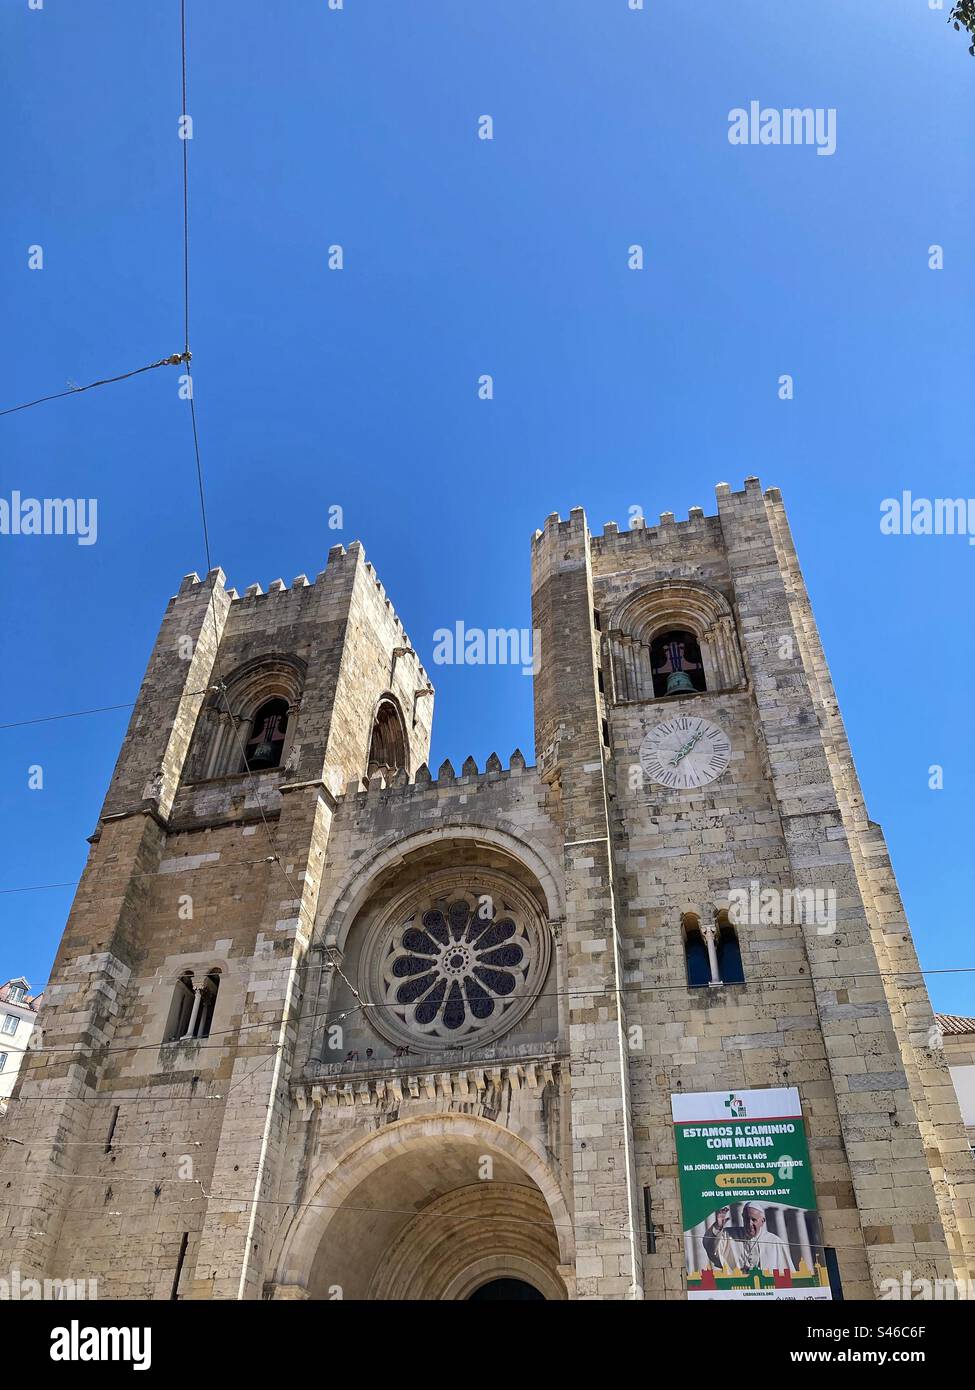 Se de Lisboa ( Cathédrale Sainte Marie majeure . La plus ancienne église de la ville de Lisbonne. Construit pour la première fois en 1147. Ici avec une affiche sur le JMJ et visite -août 2023-du pape François à la ville Banque D'Images